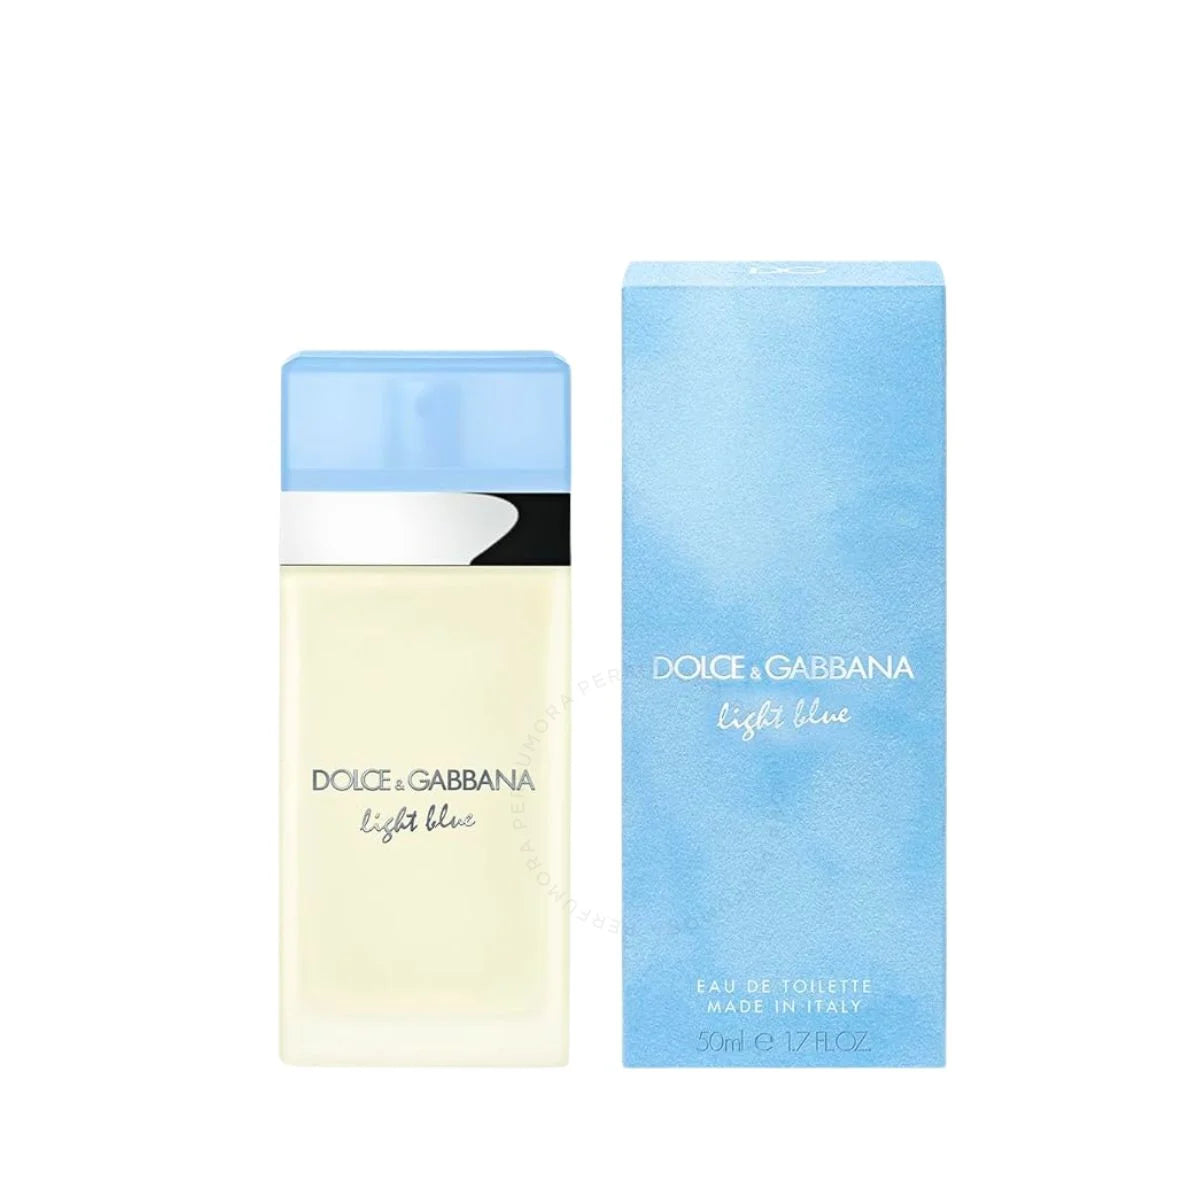 Dolce & Gabbana Light Blue 1.7 oz EDT Spray for Women